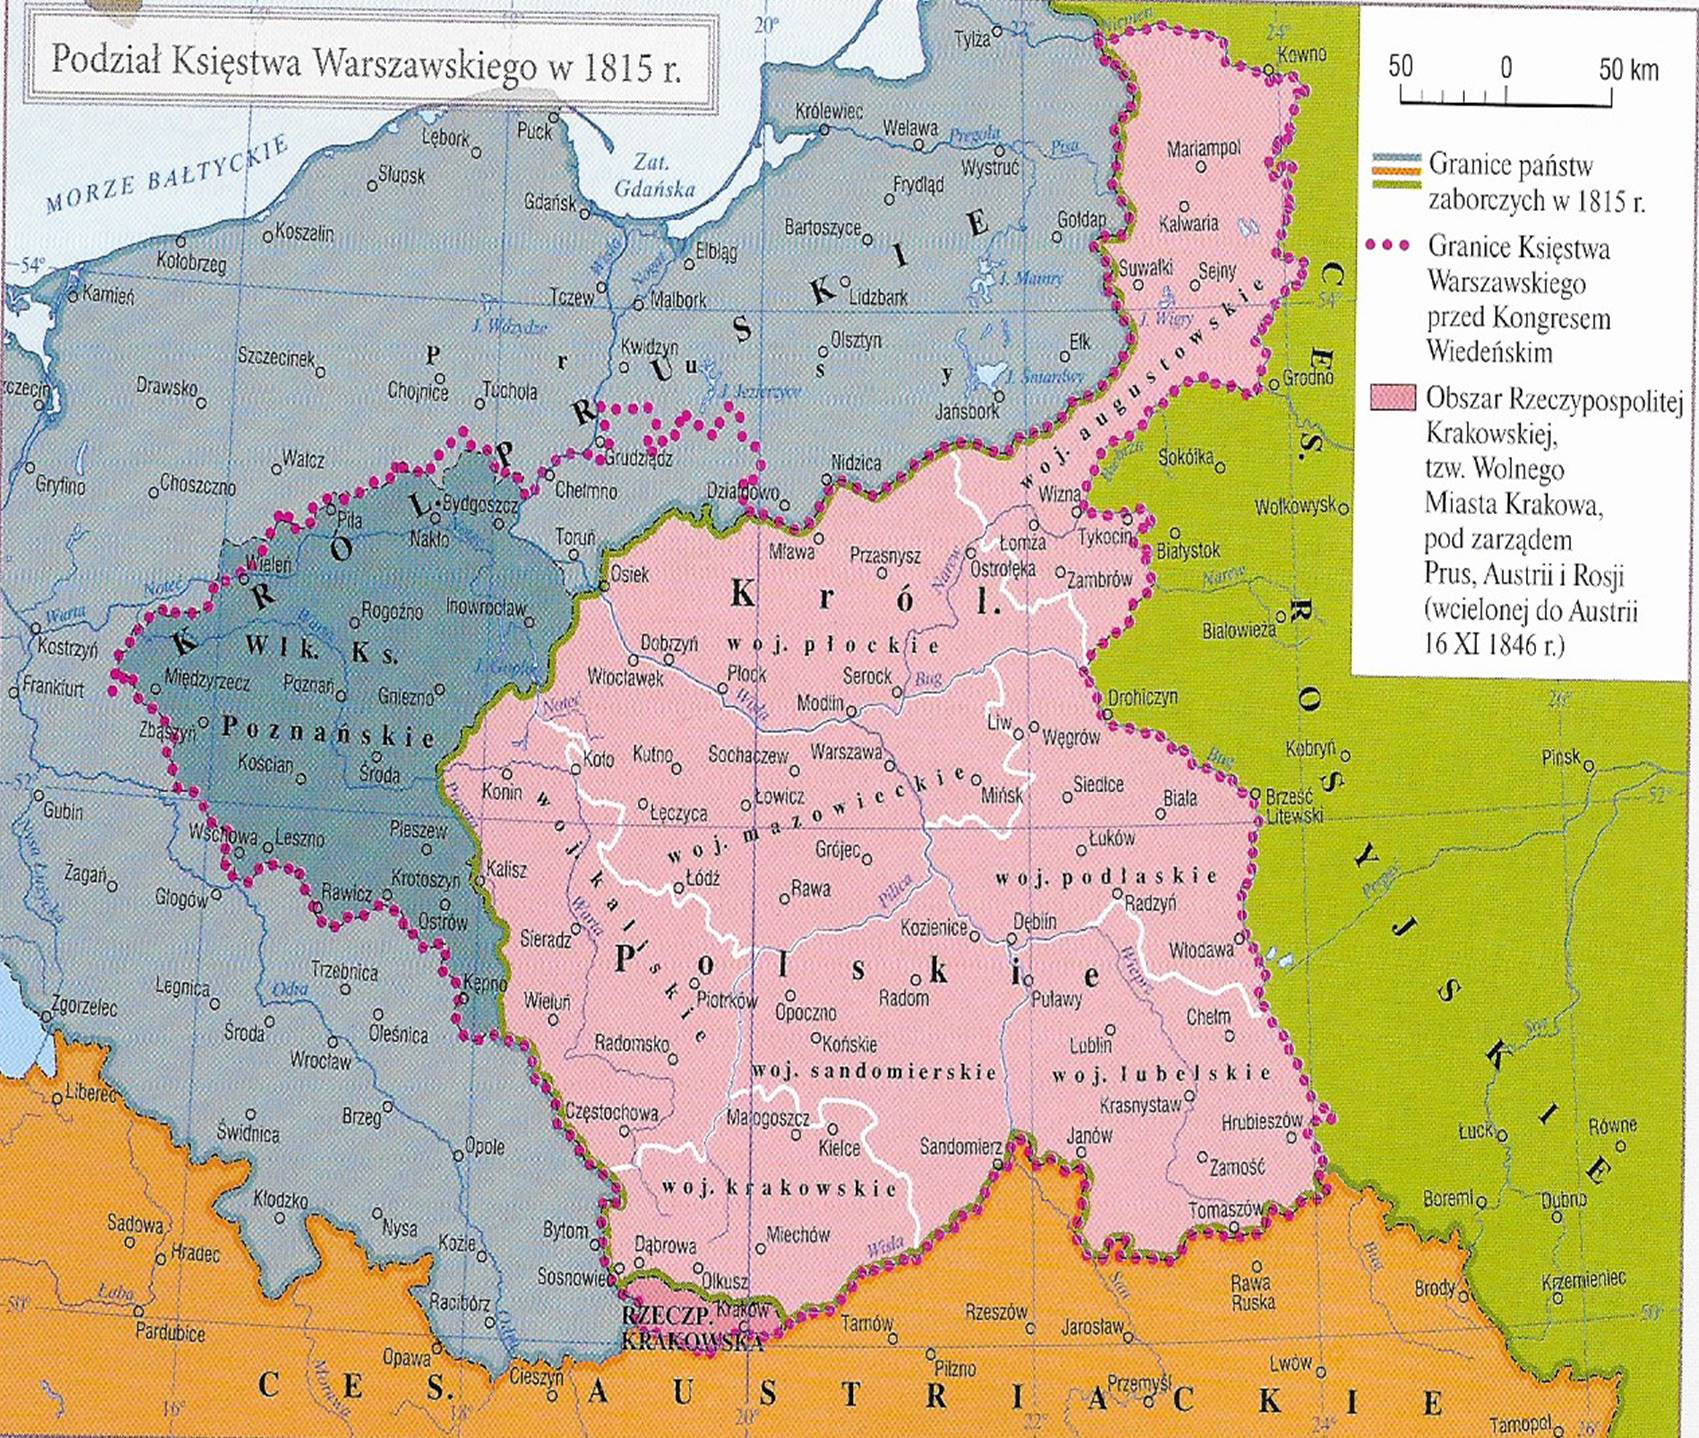 Ziemie Polskie W Drugiej Połowie Xix Wieku Rozszerzona historia w V LO: Ziemie polskie 1815 - 1831